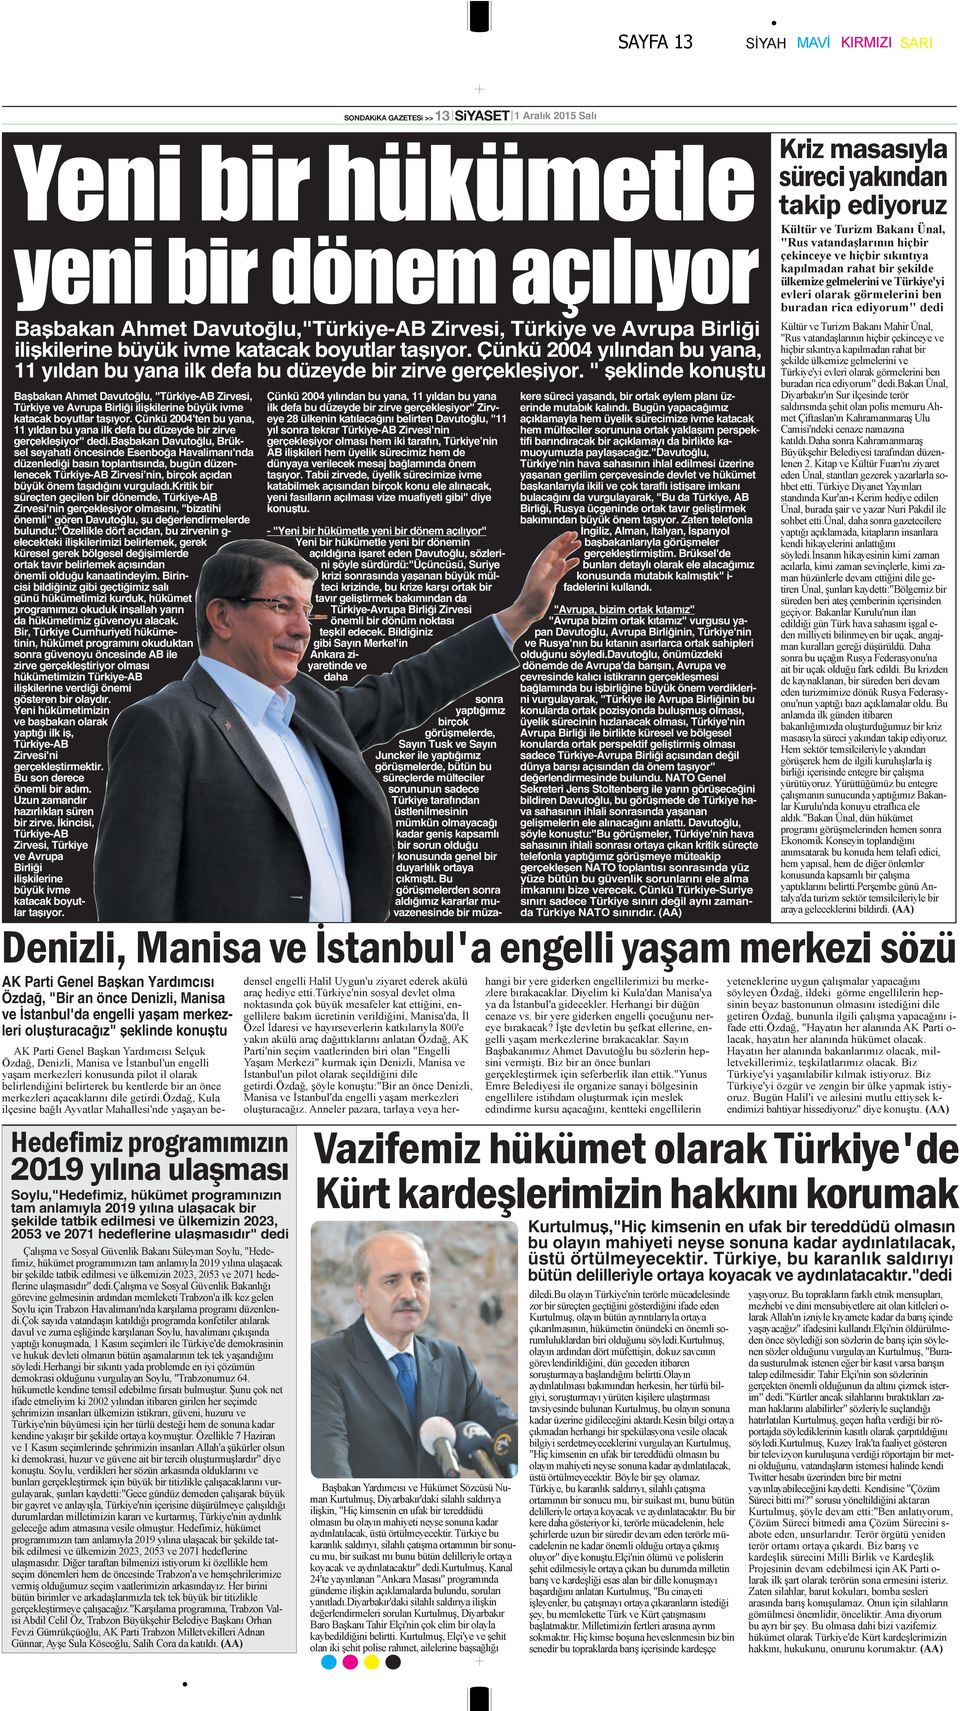 " şeklinde konuştu Bşbkn Ahmet Dvutoğlu, "Türkiye-AB Zirvesi, Türkiye ve Avrup Birliği ilişkilerine büyük ivme ktck boyutlr tşıyor.